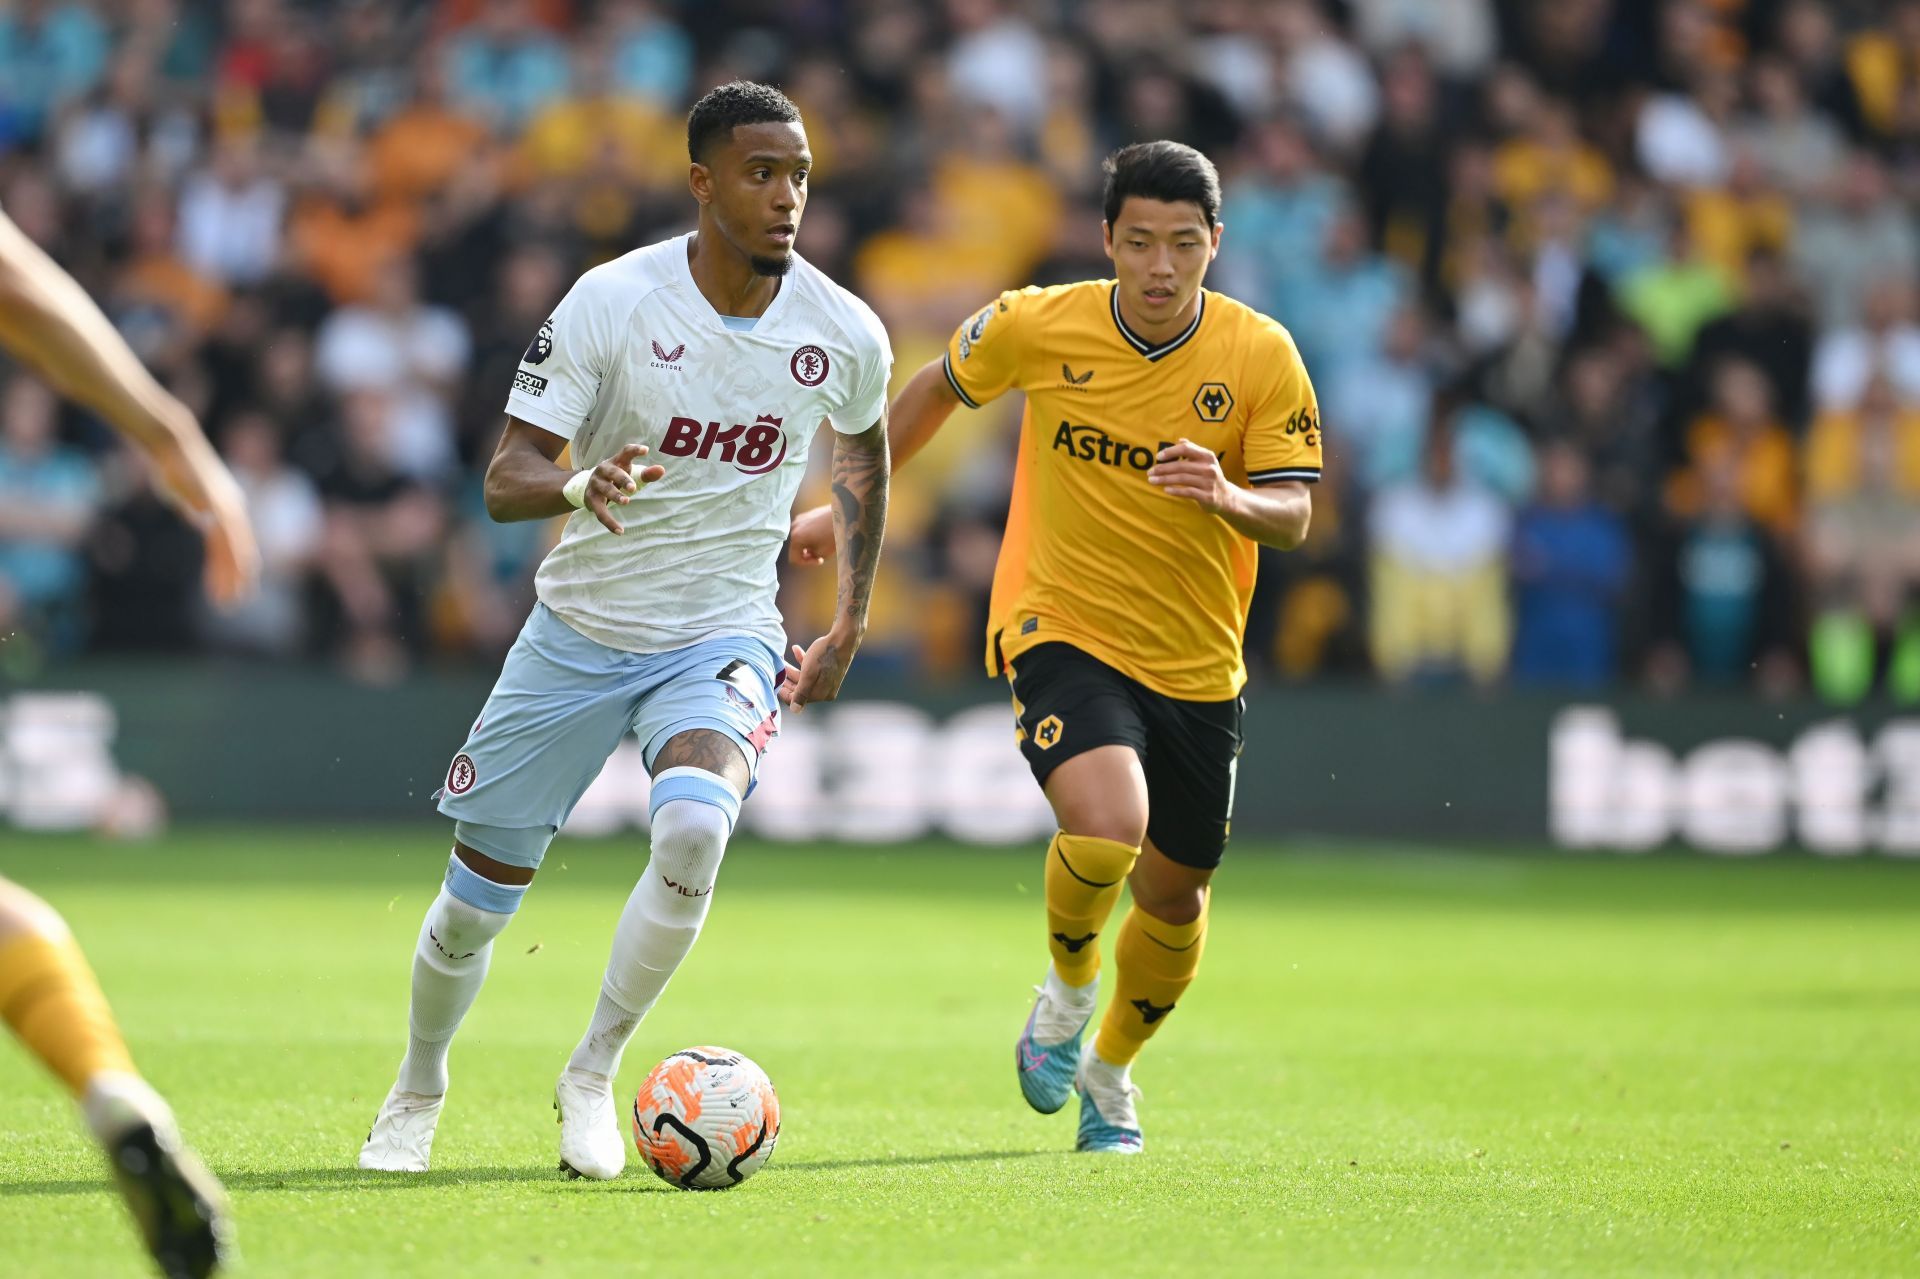 Wolverhampton Wanderers take on Aston Villa this weekend